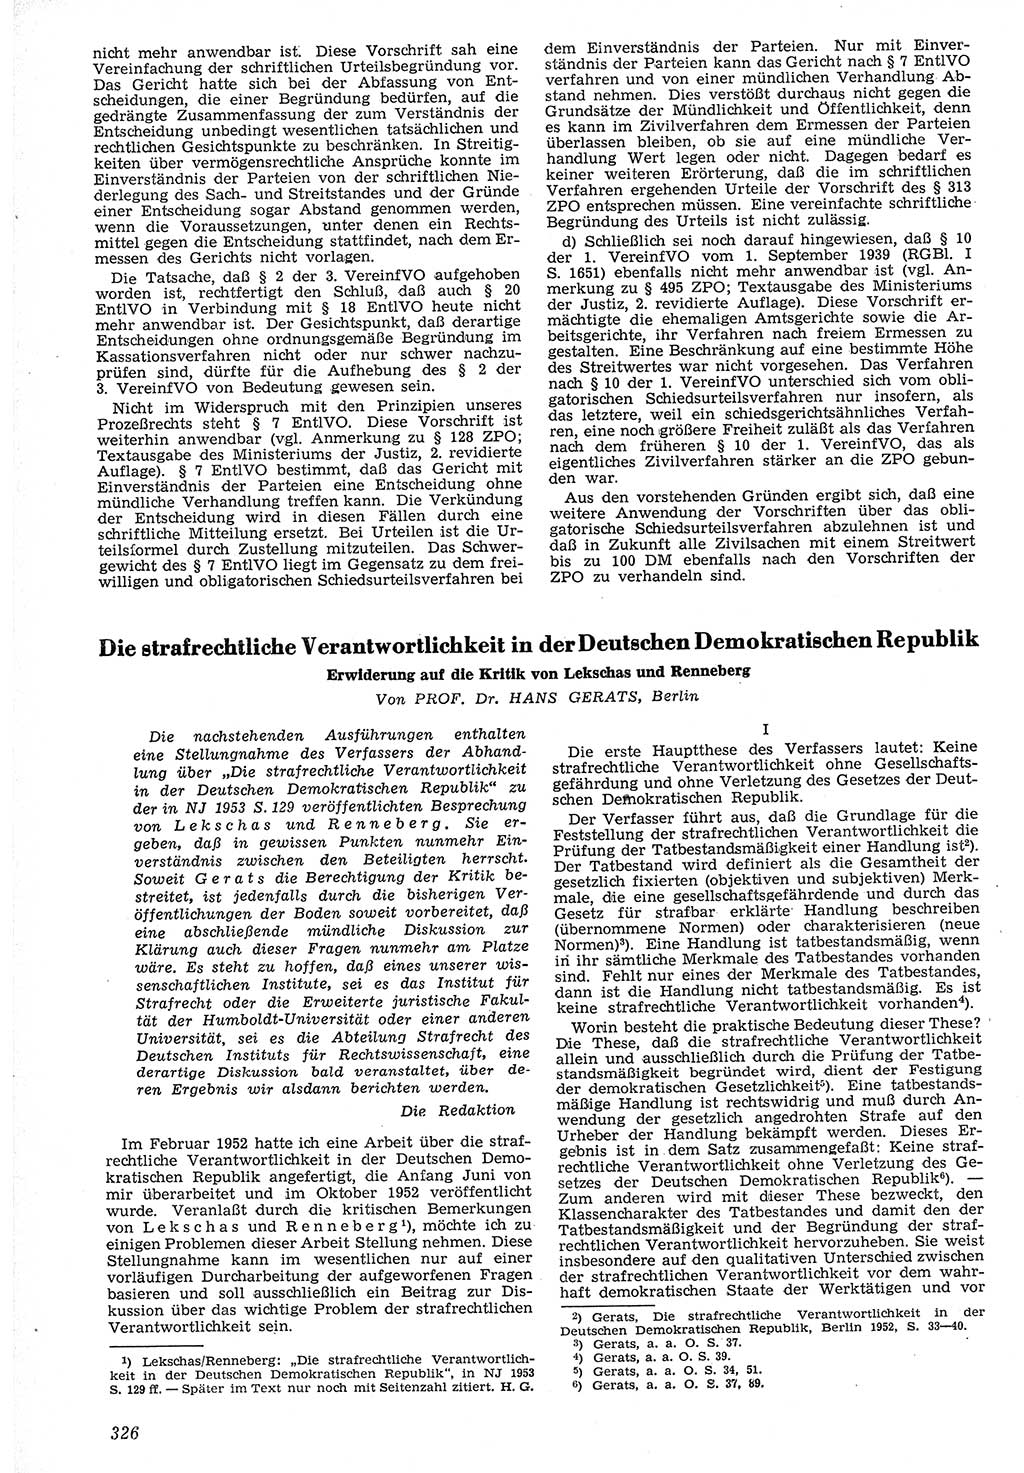 Neue Justiz (NJ), Zeitschrift für Recht und Rechtswissenschaft [Deutsche Demokratische Republik (DDR)], 7. Jahrgang 1953, Seite 326 (NJ DDR 1953, S. 326)